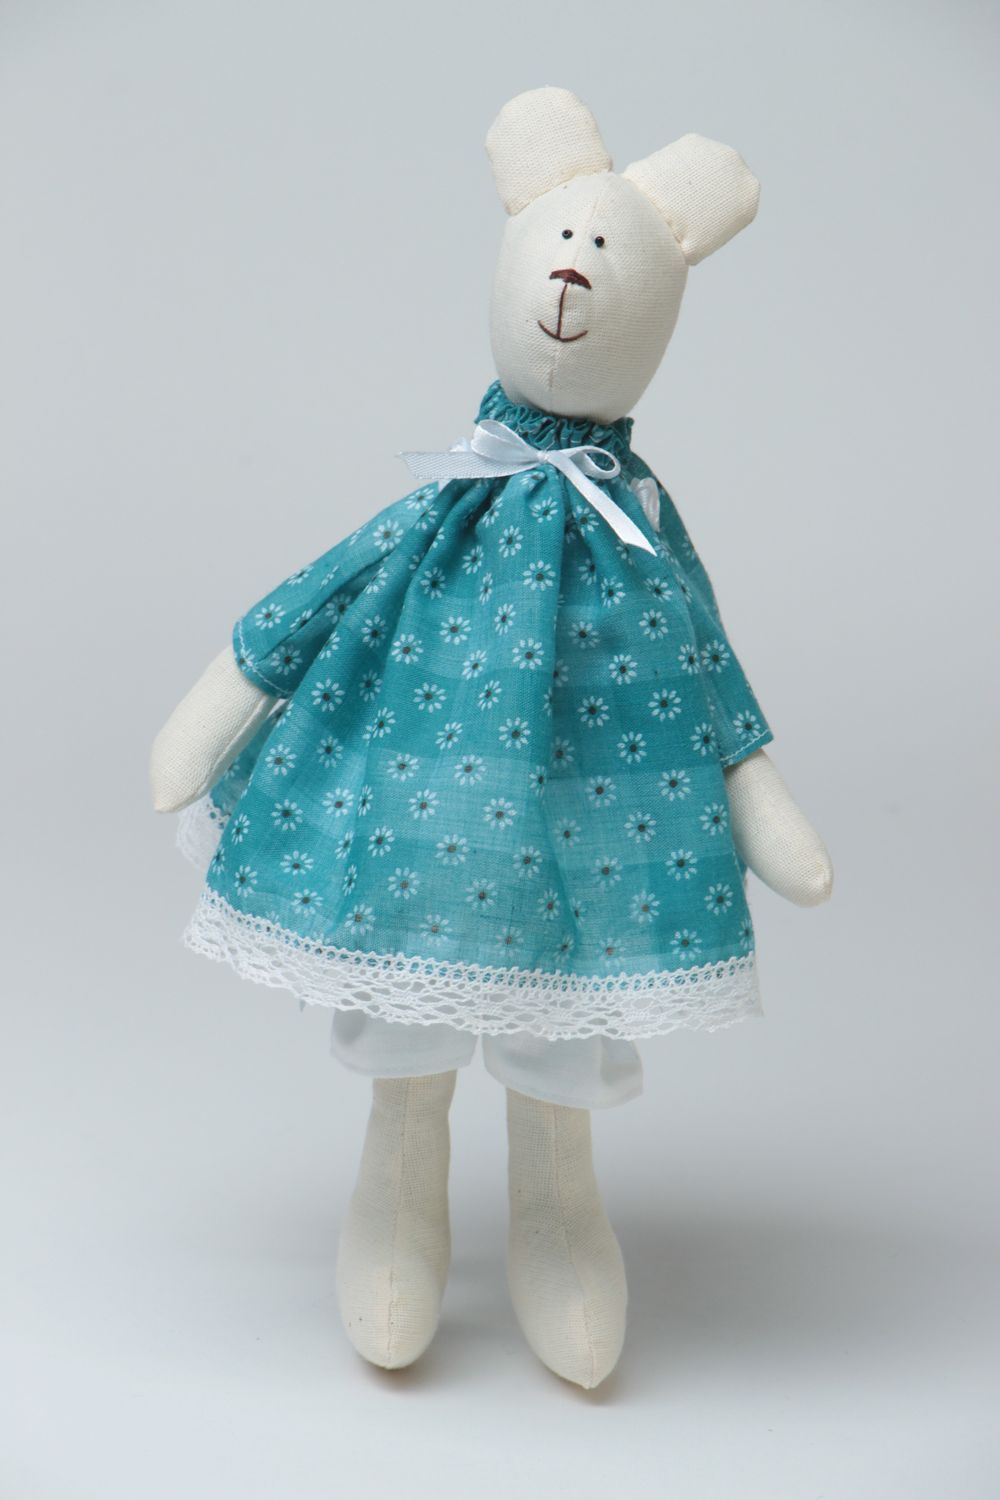 Joli jouet mou fait main ourse blanche en robe de cotonnette et coton cadeau photo 2